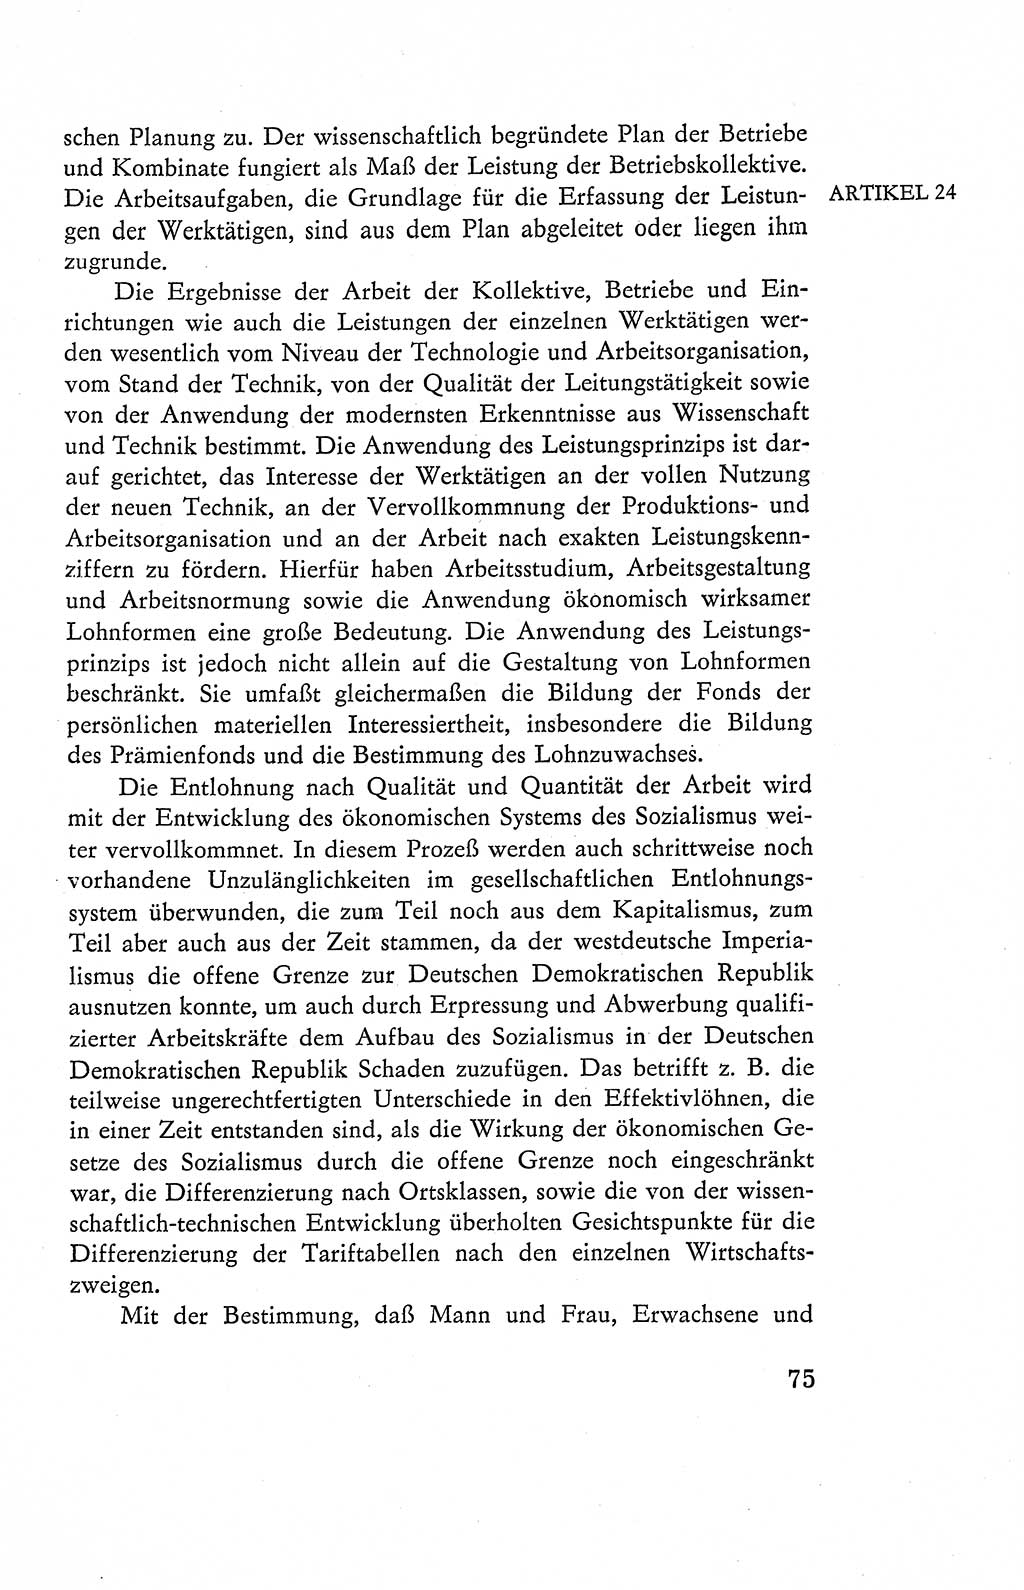 Verfassung der Deutschen Demokratischen Republik (DDR), Dokumente, Kommentar 1969, Band 2, Seite 75 (Verf. DDR Dok. Komm. 1969, Bd. 2, S. 75)